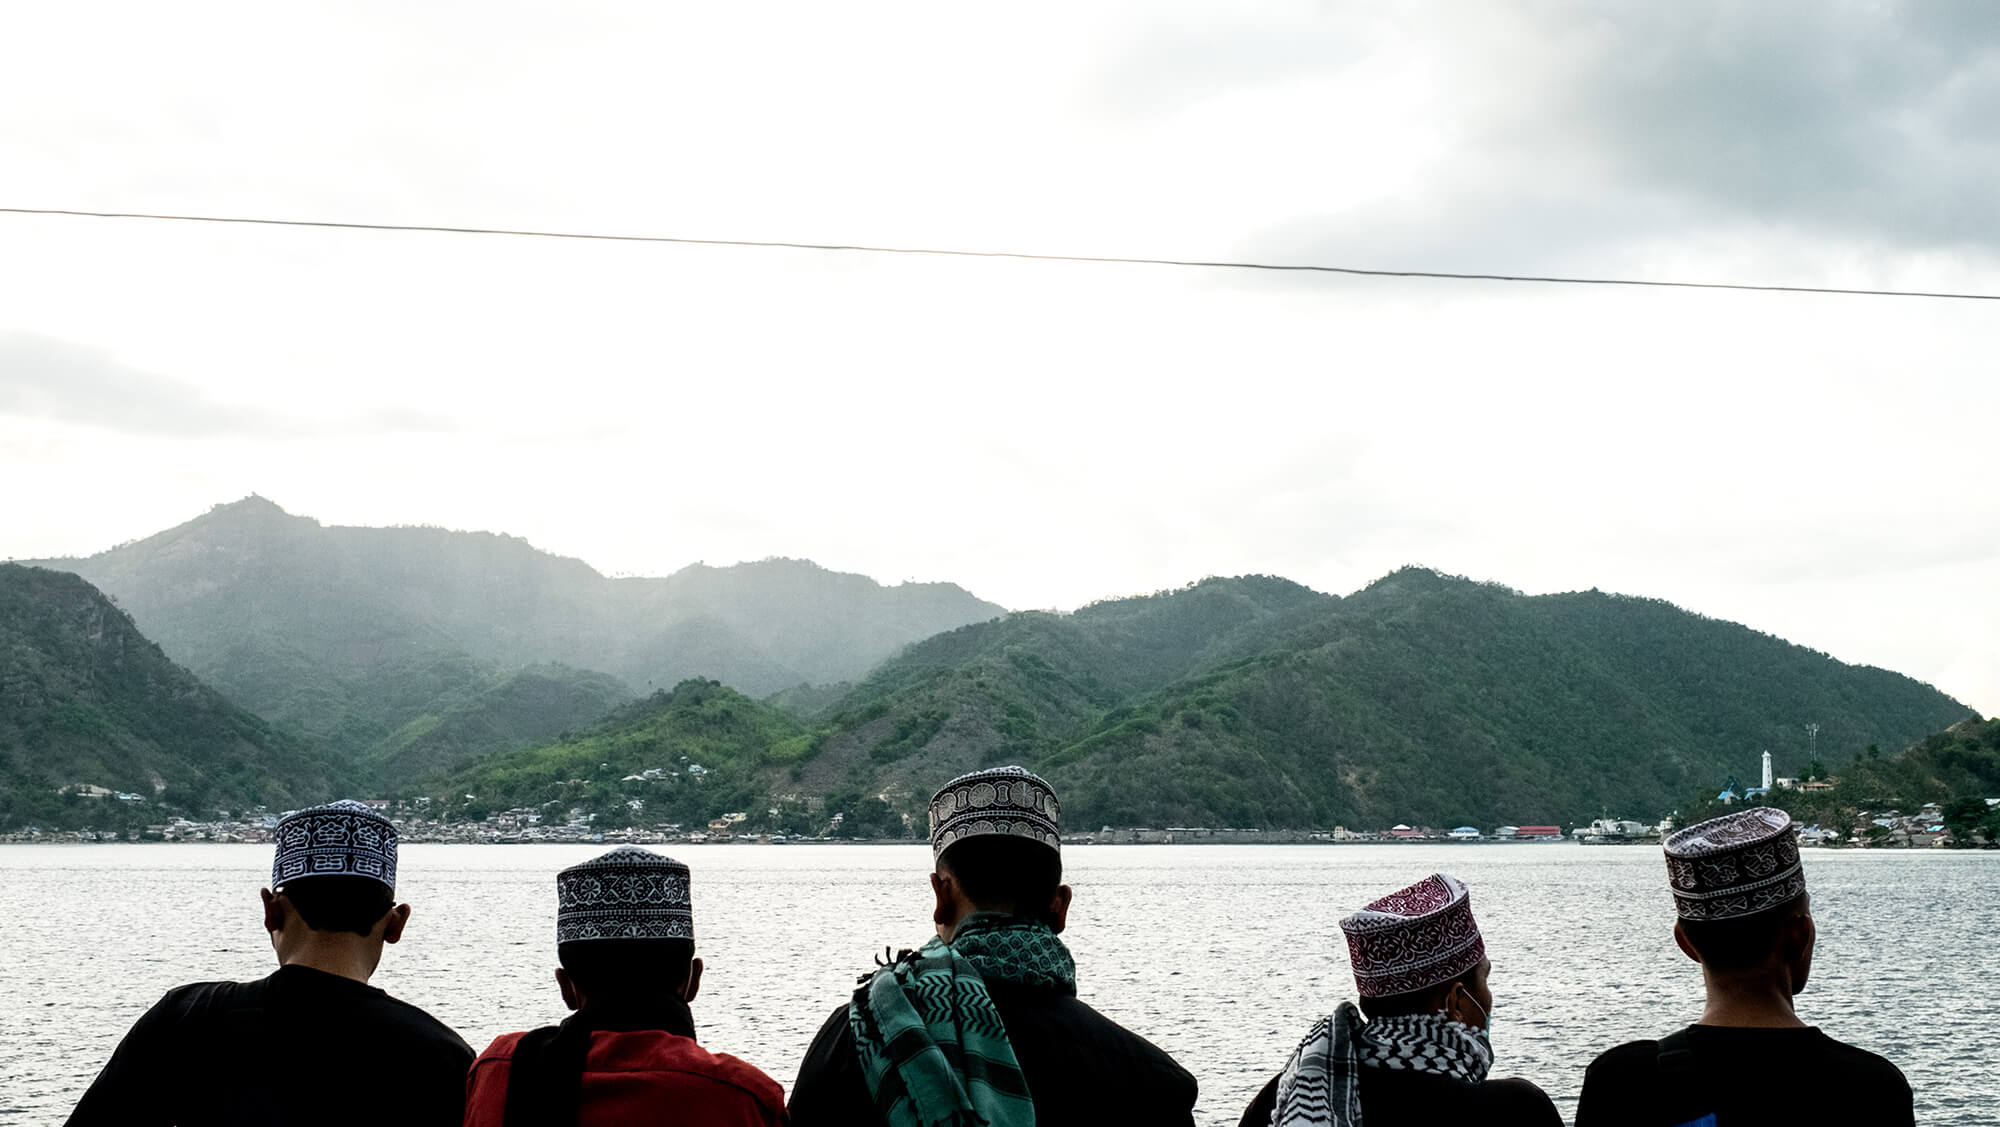 Indonesios con ropa tradicional en el ferry a las islas Togean